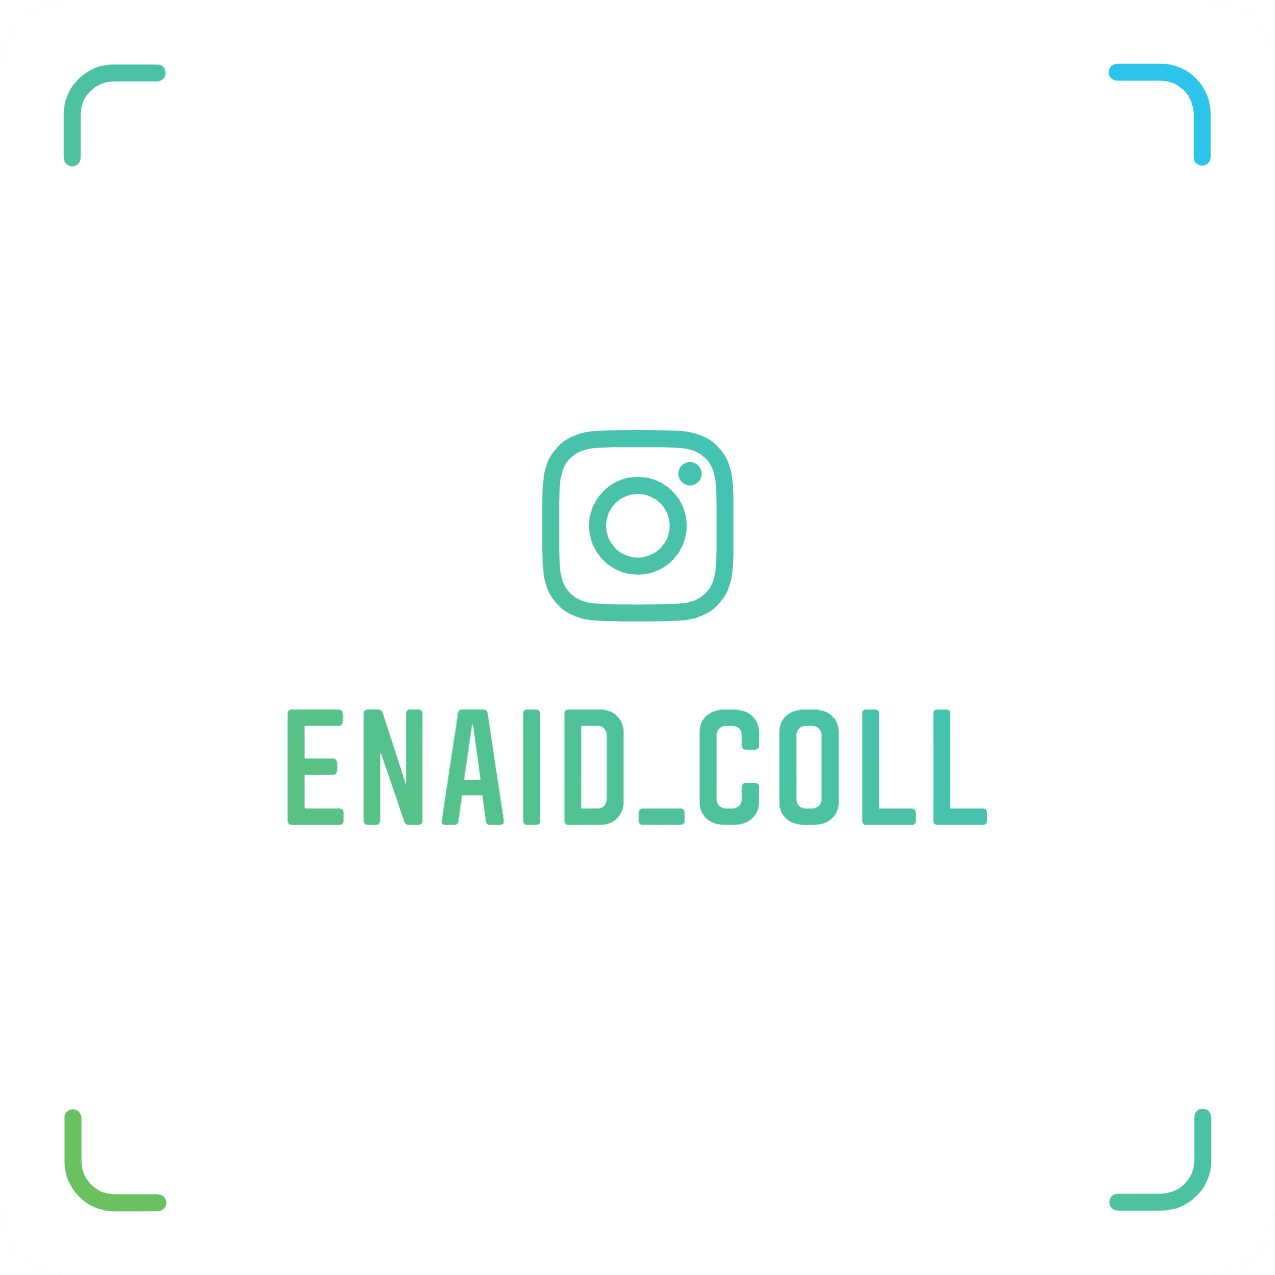 Enaid Coll